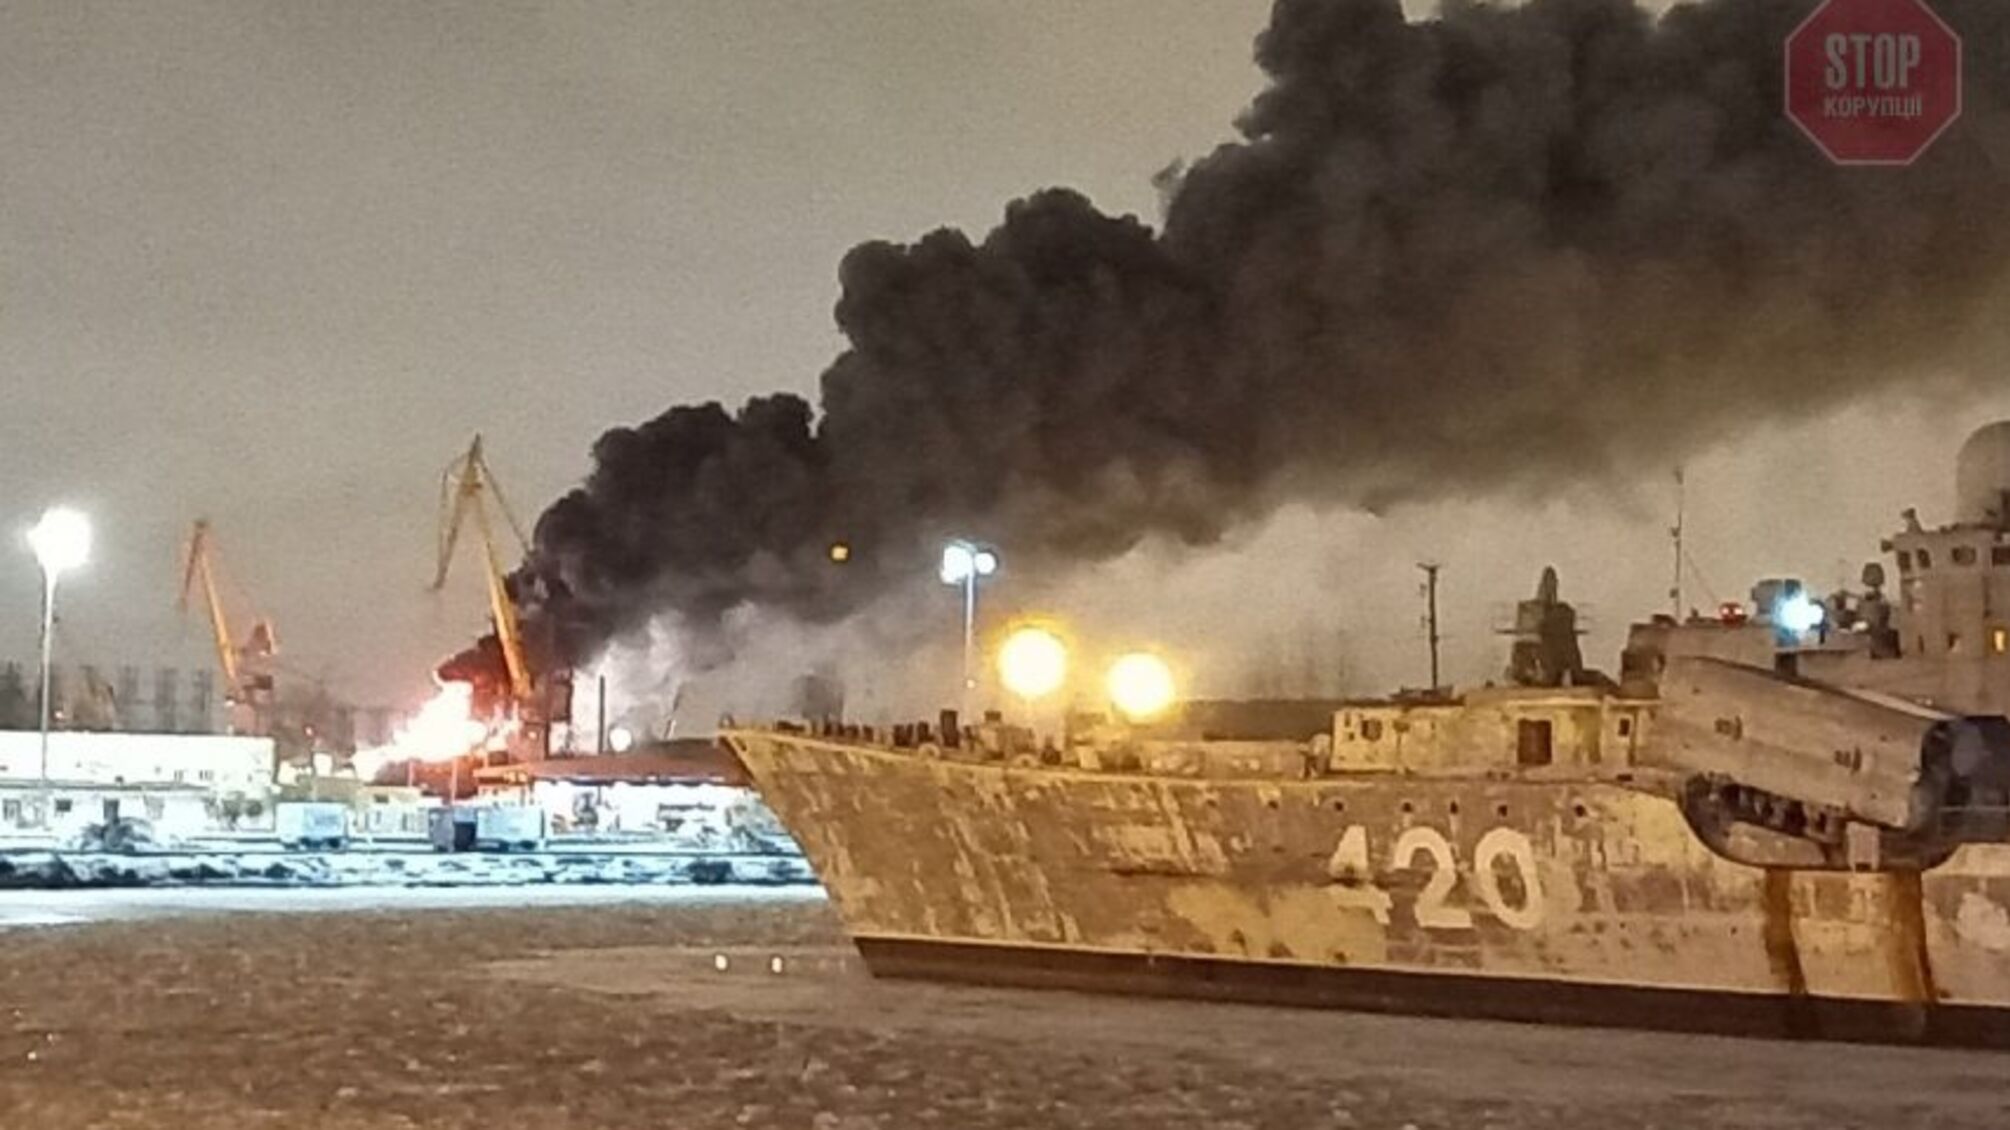 В России на судостроительном заводе загорелся военный корабль, есть пострадавшие (видео)